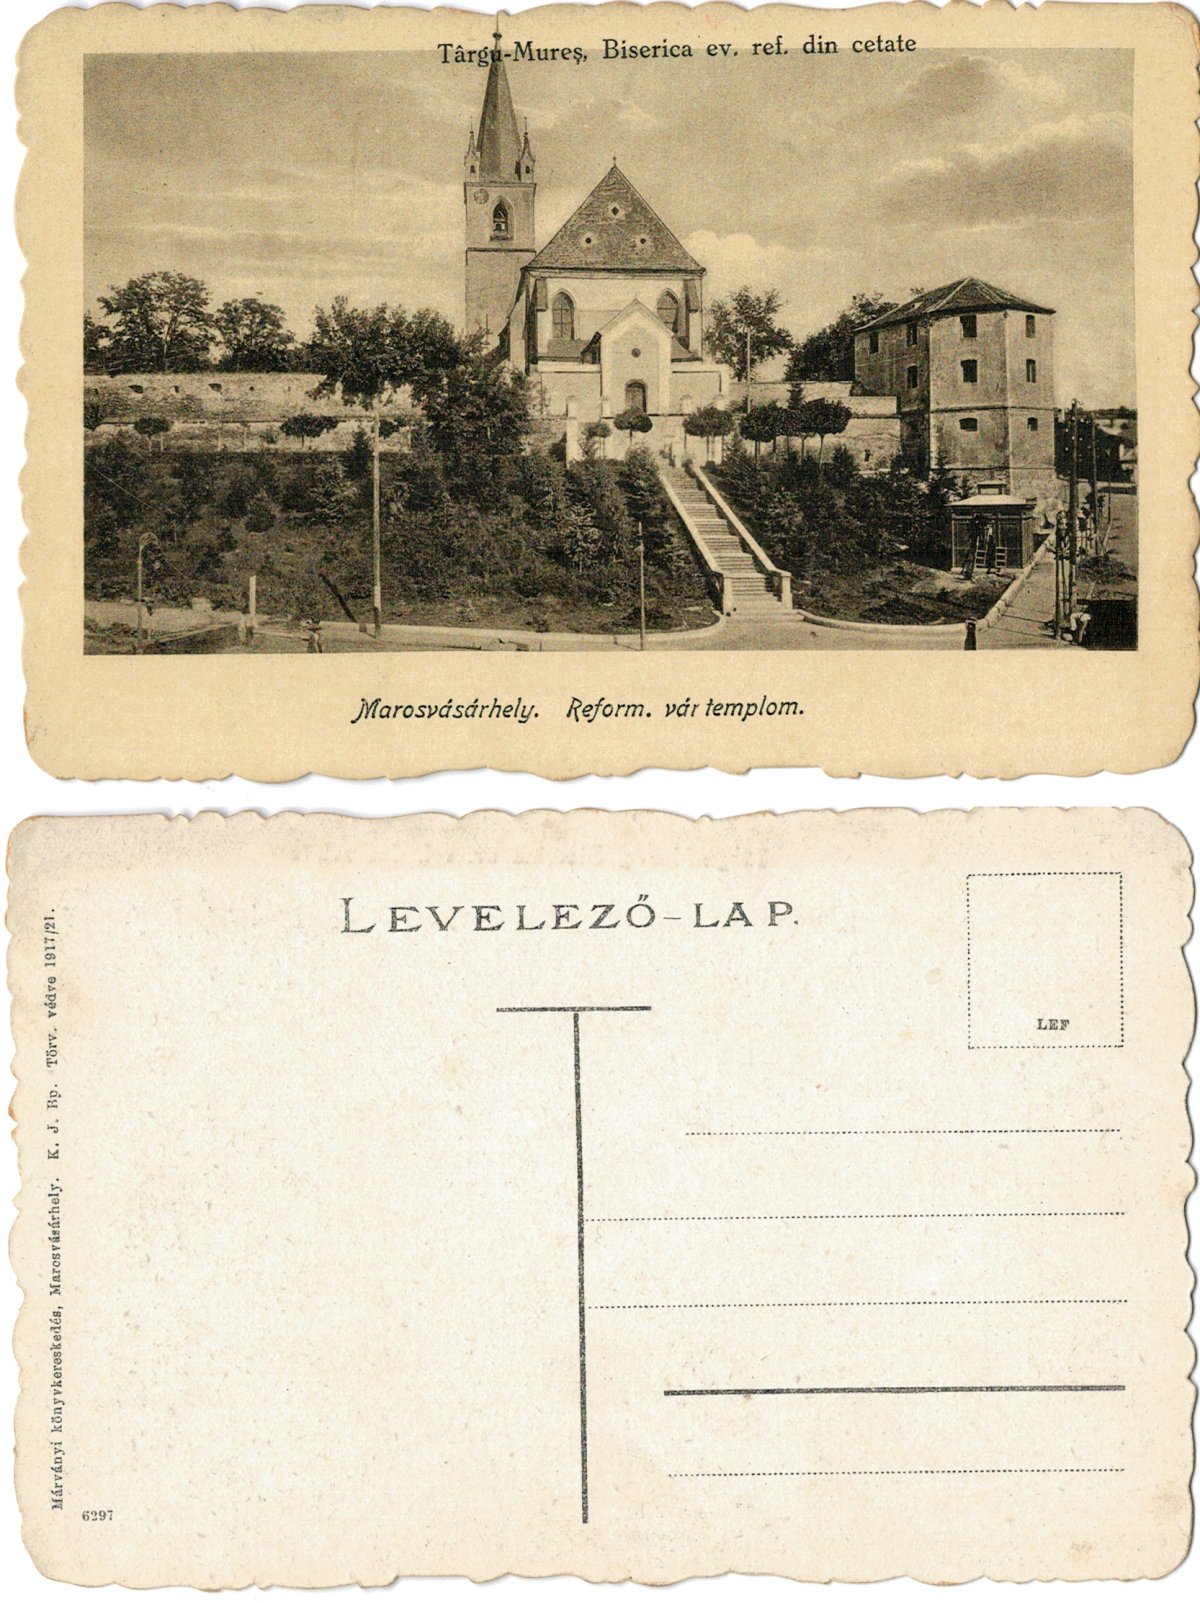 Targu Mures 1917/21 - Biserica din cetate, ilustrata necirculata